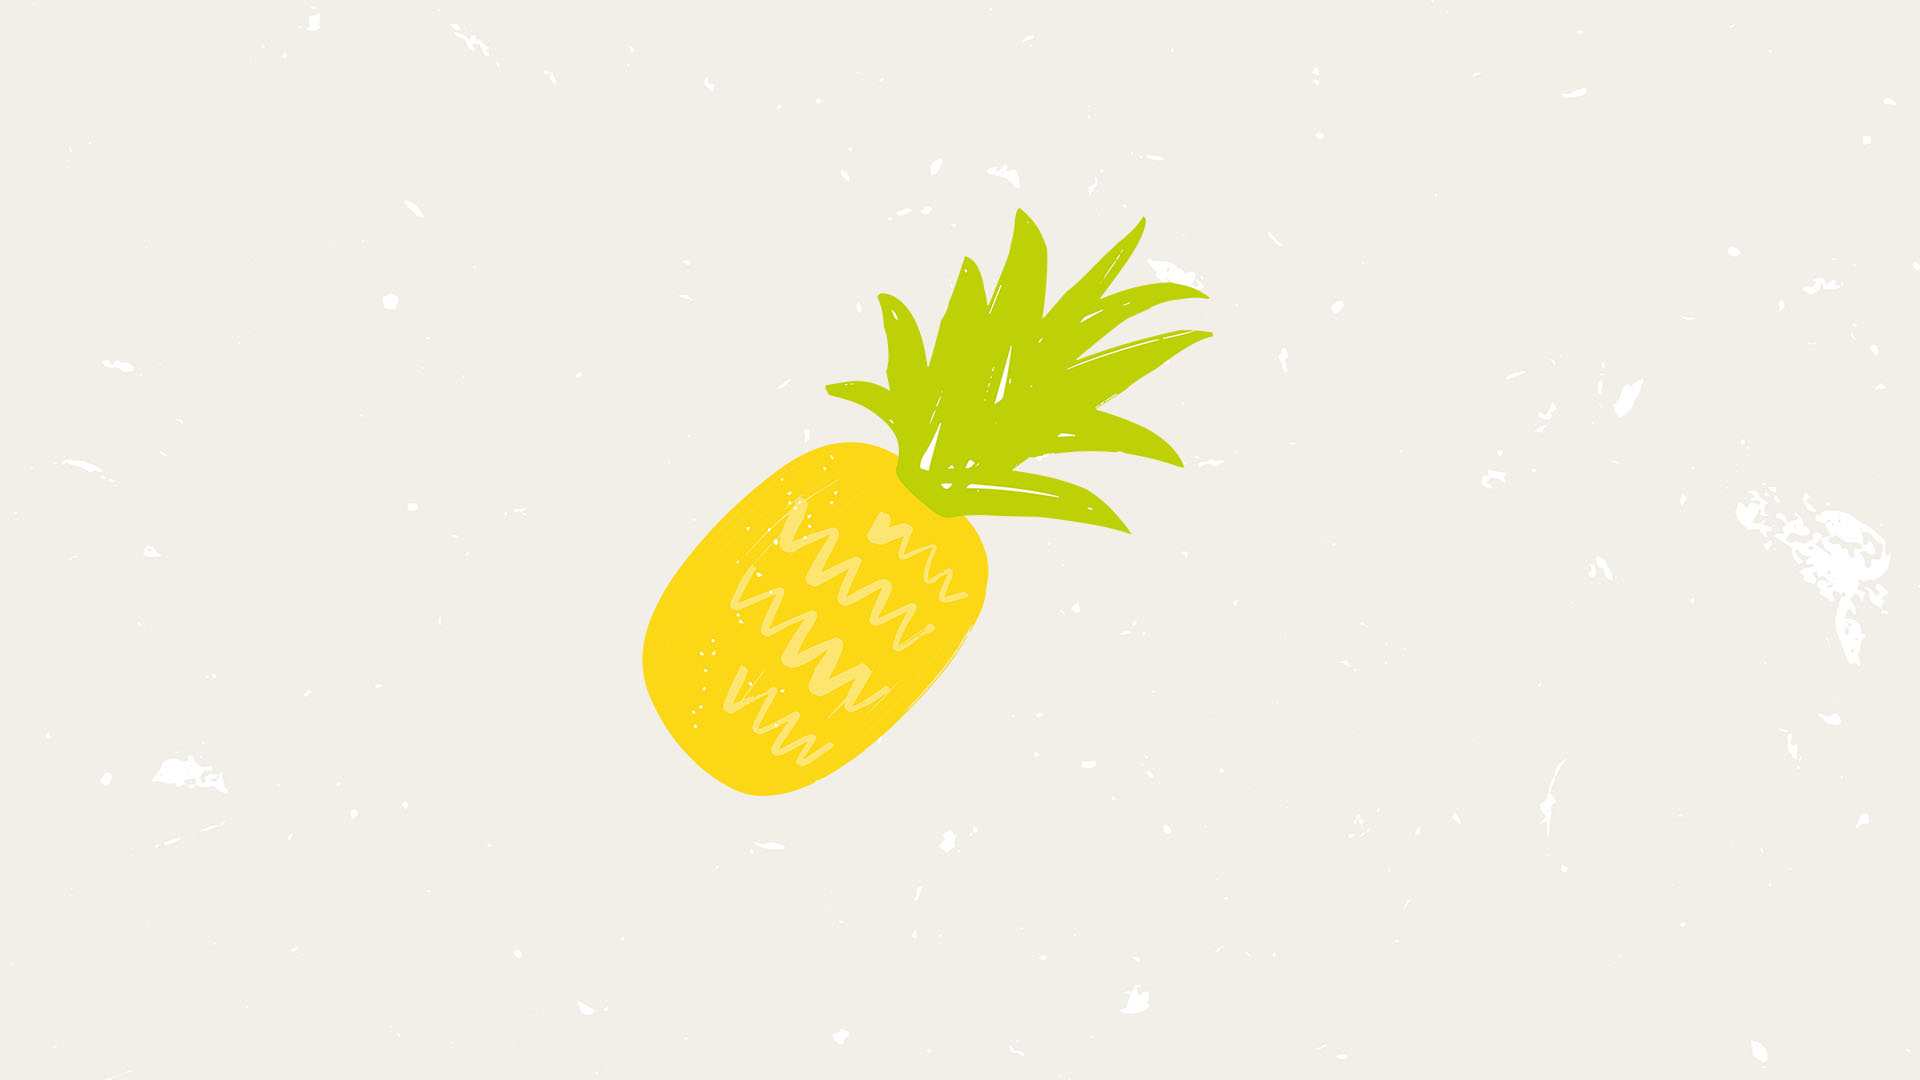 LandSeaTree2nd_illustration_pineapple